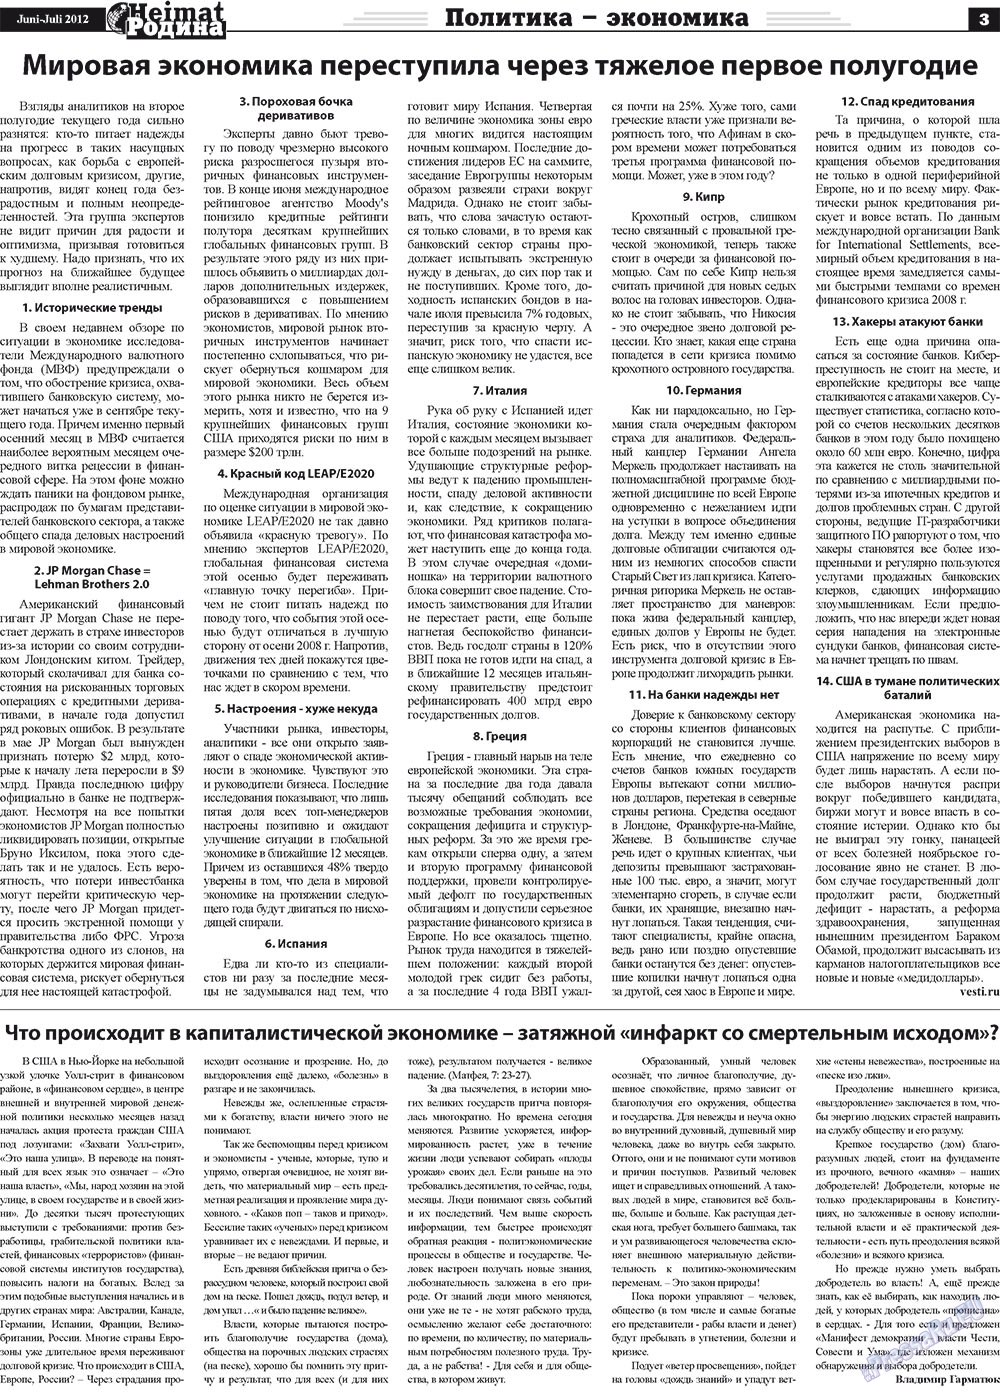 Heimat-Родина (газета). 2012 год, номер 5, стр. 3